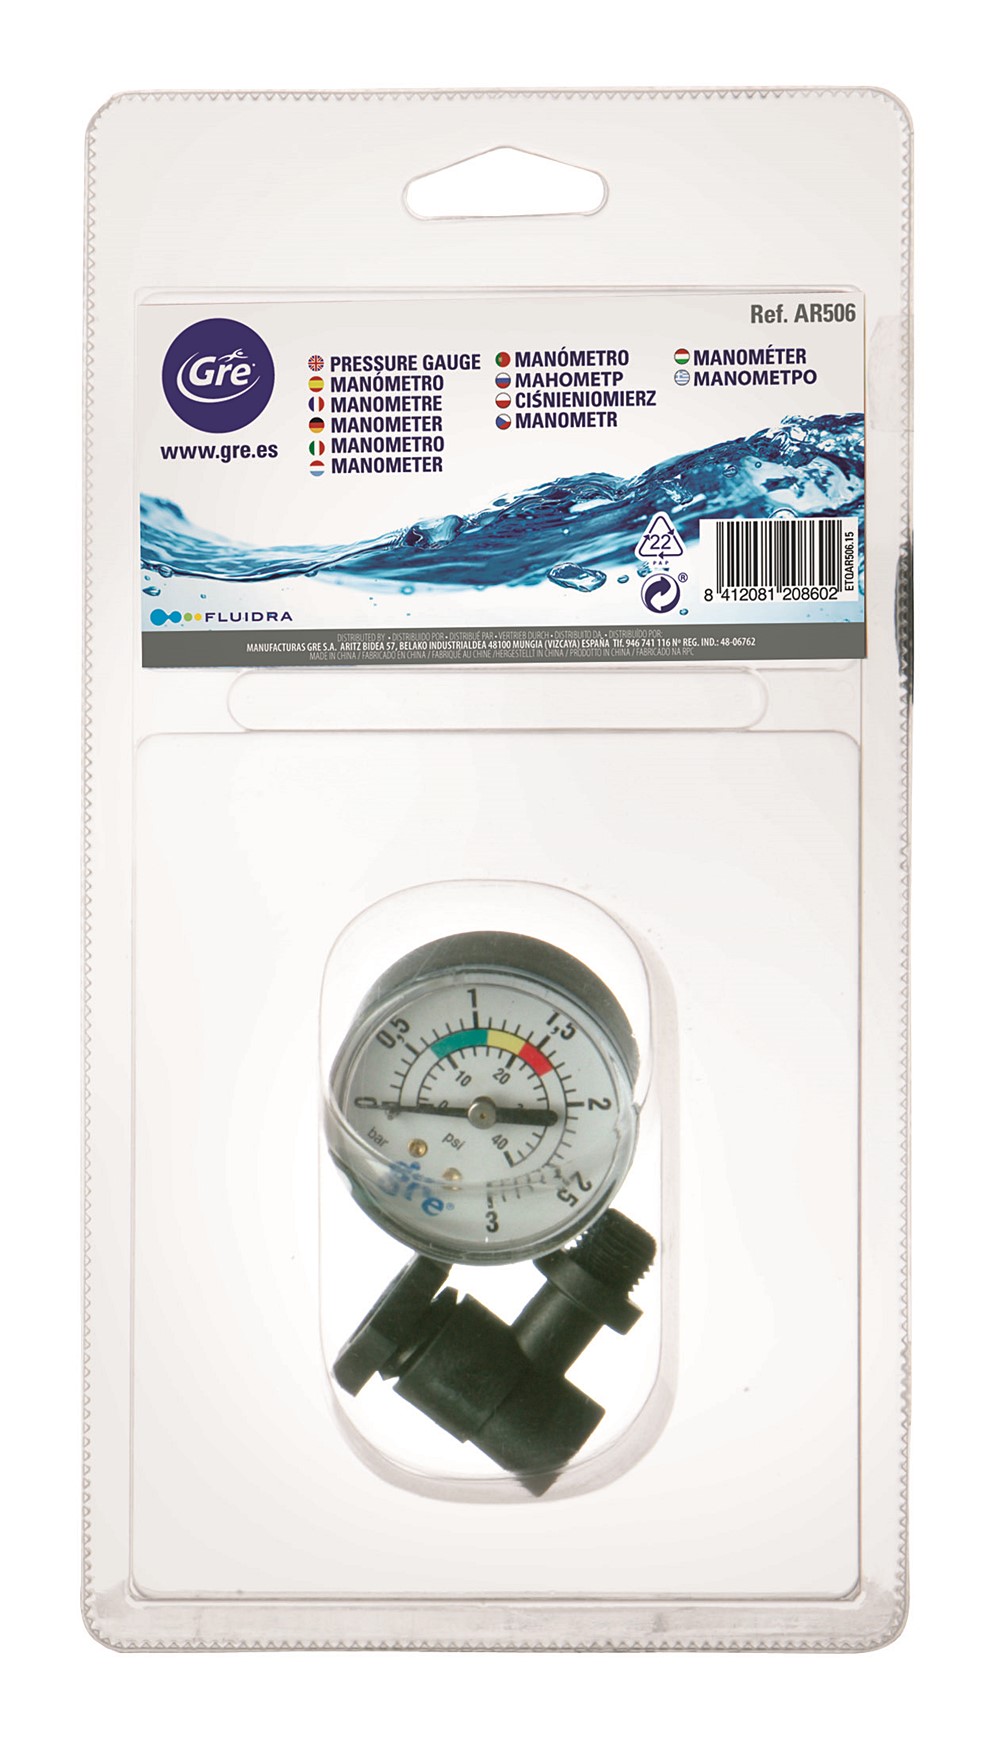 Manomètre AR506 pour filtration à sable de piscine - GRE